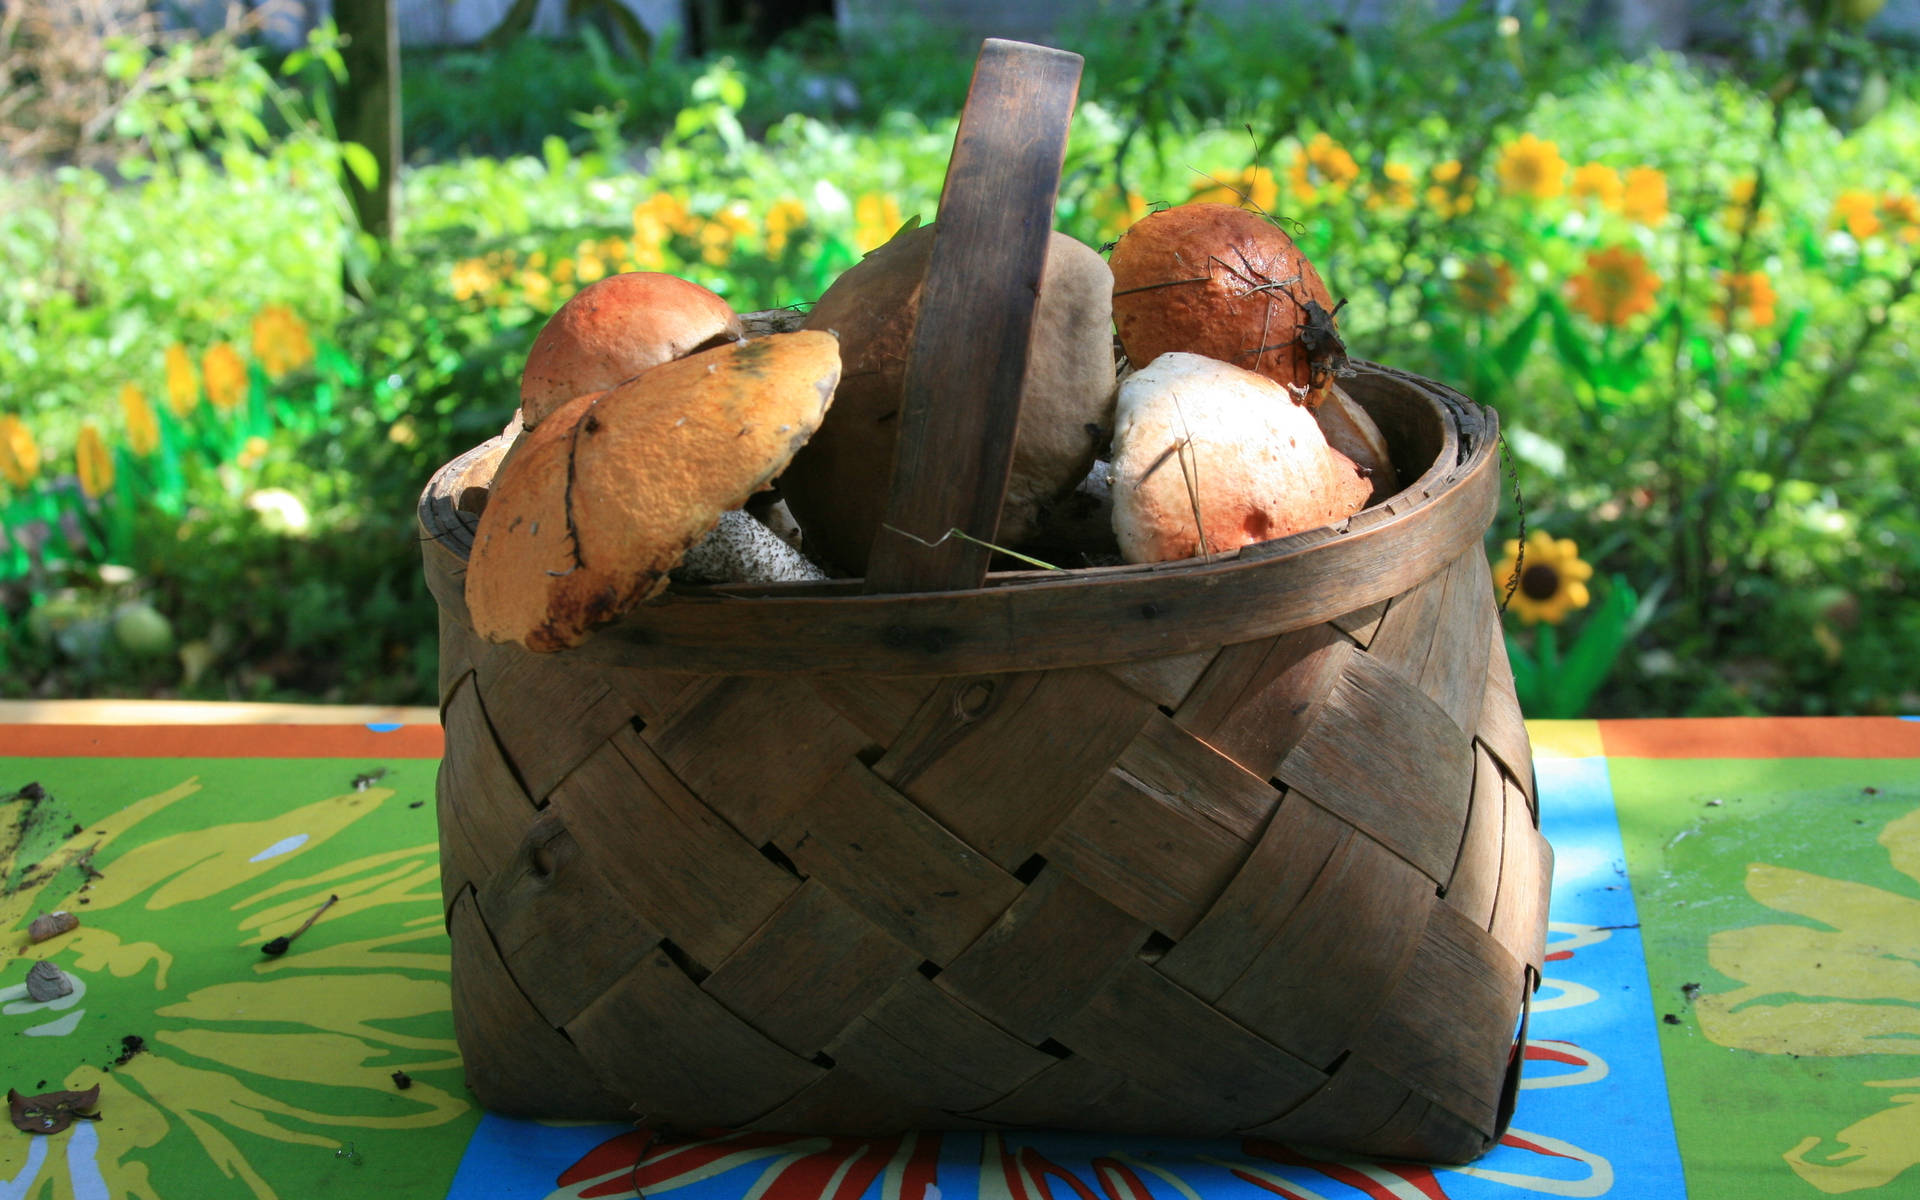 Basket Full Of Cute Mushrooms